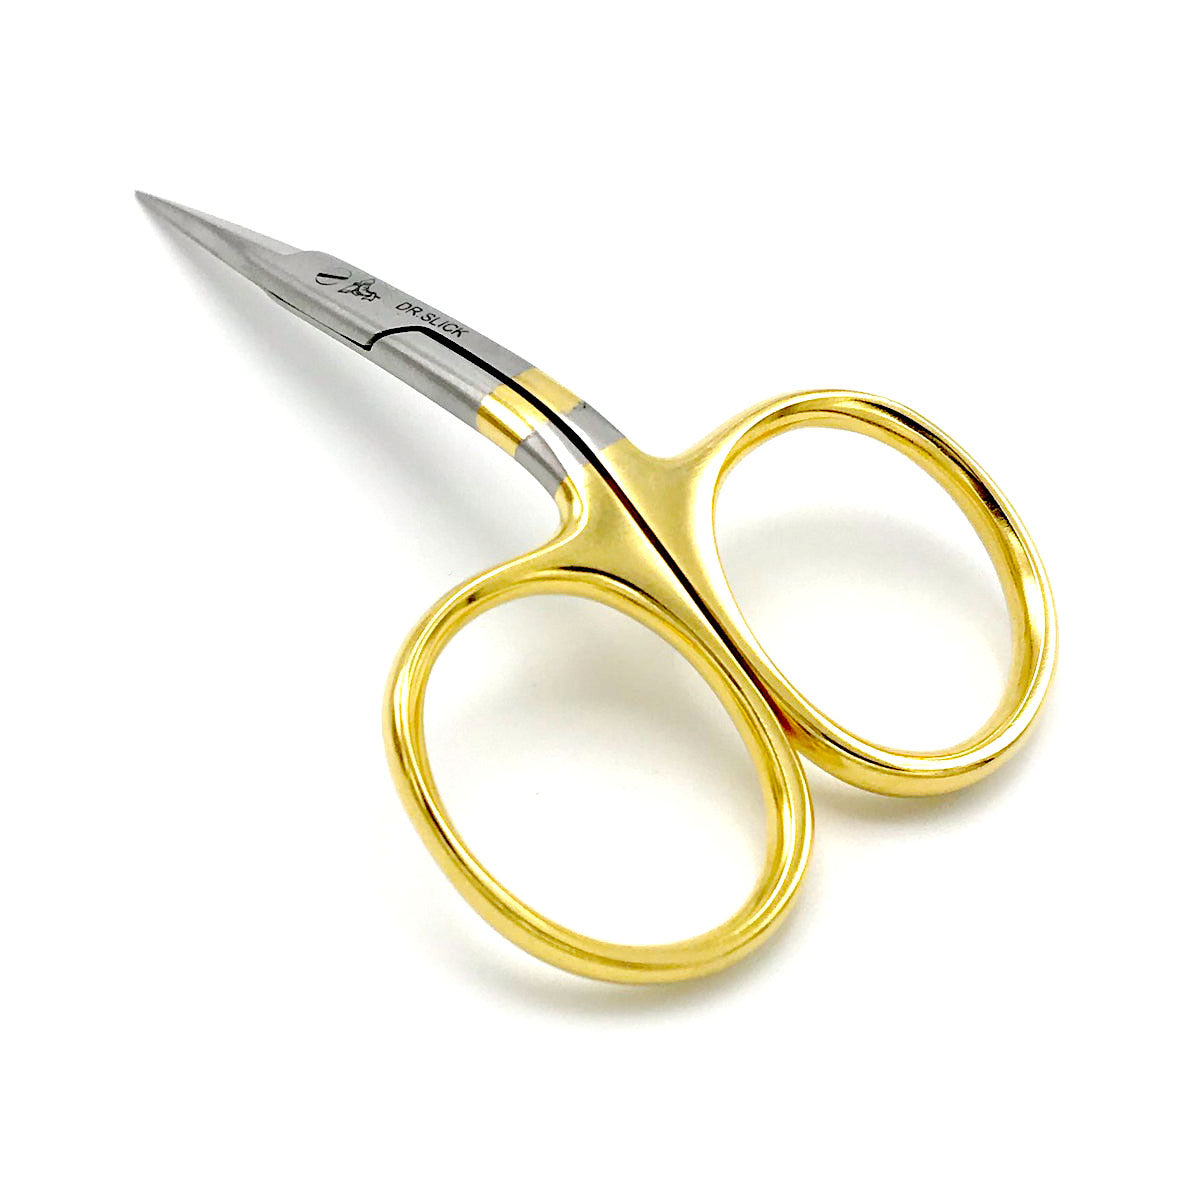 Dr. Slick Bent Shaft Scissors – The Trout Shop